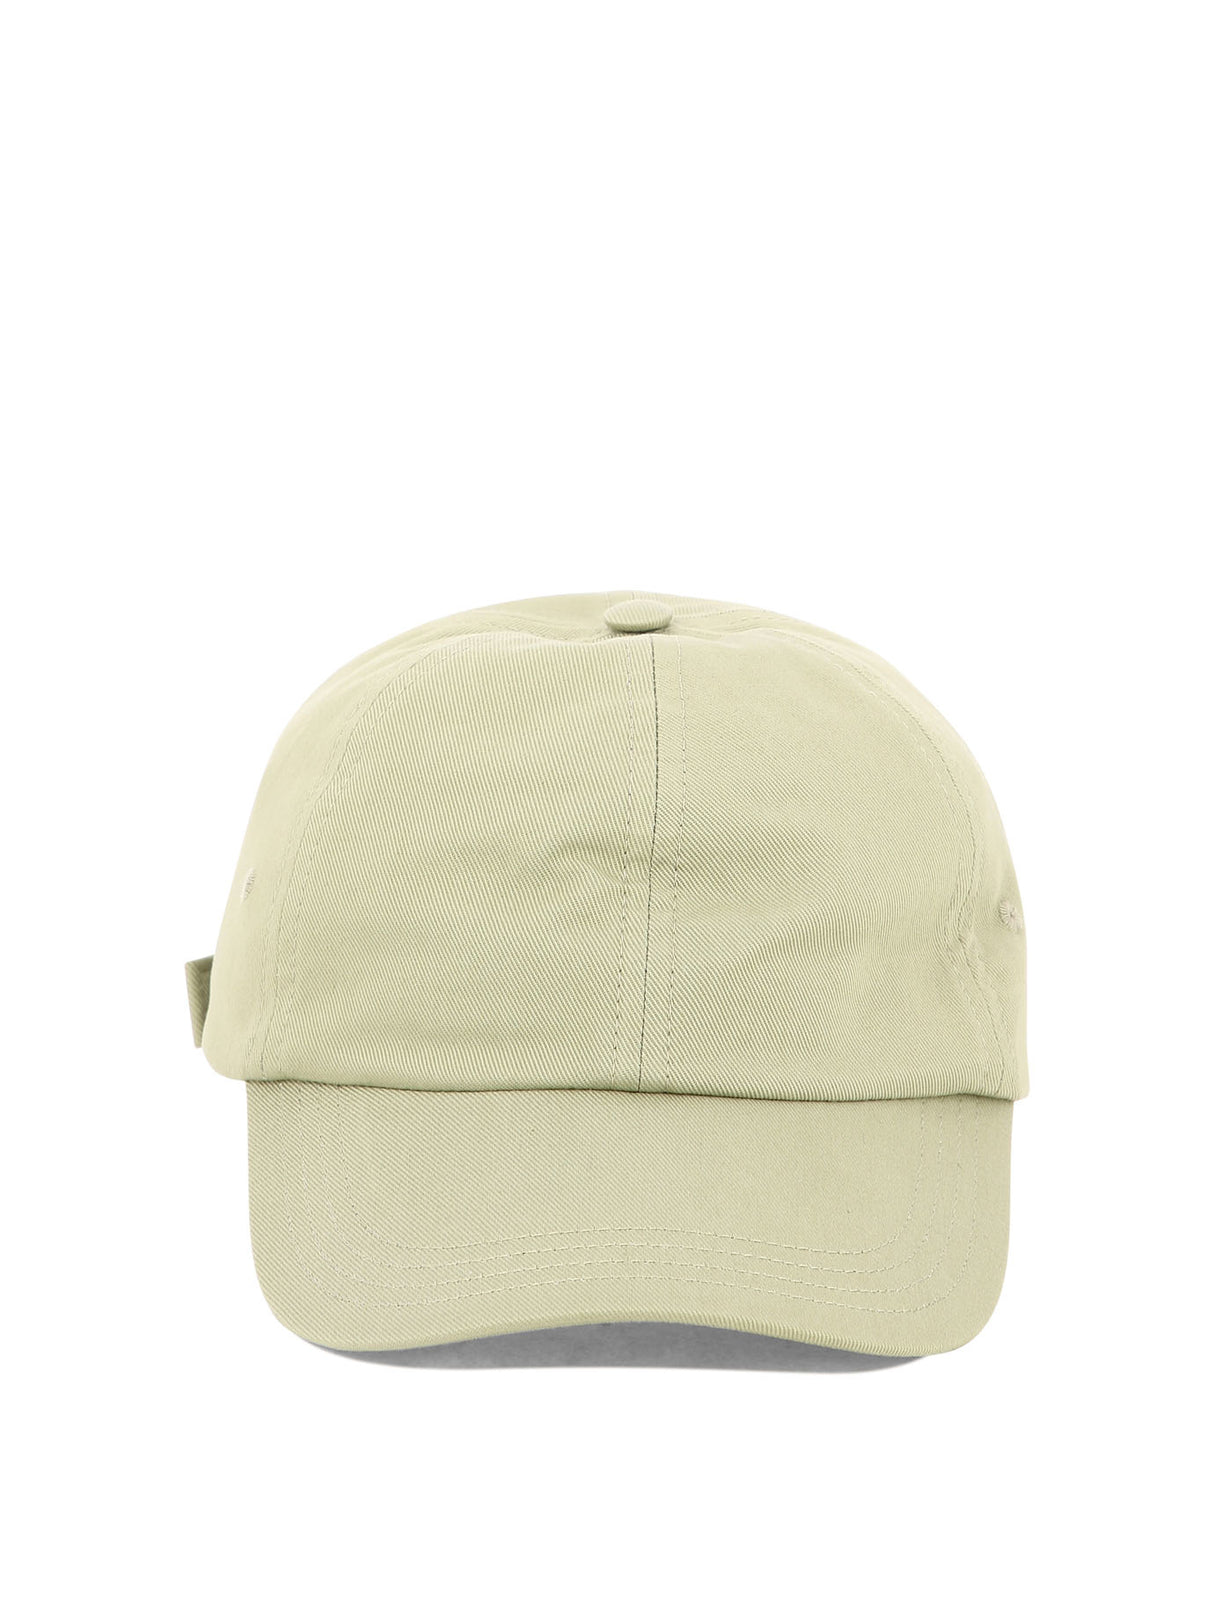 绿色刺绣女式棒球帽 SS24